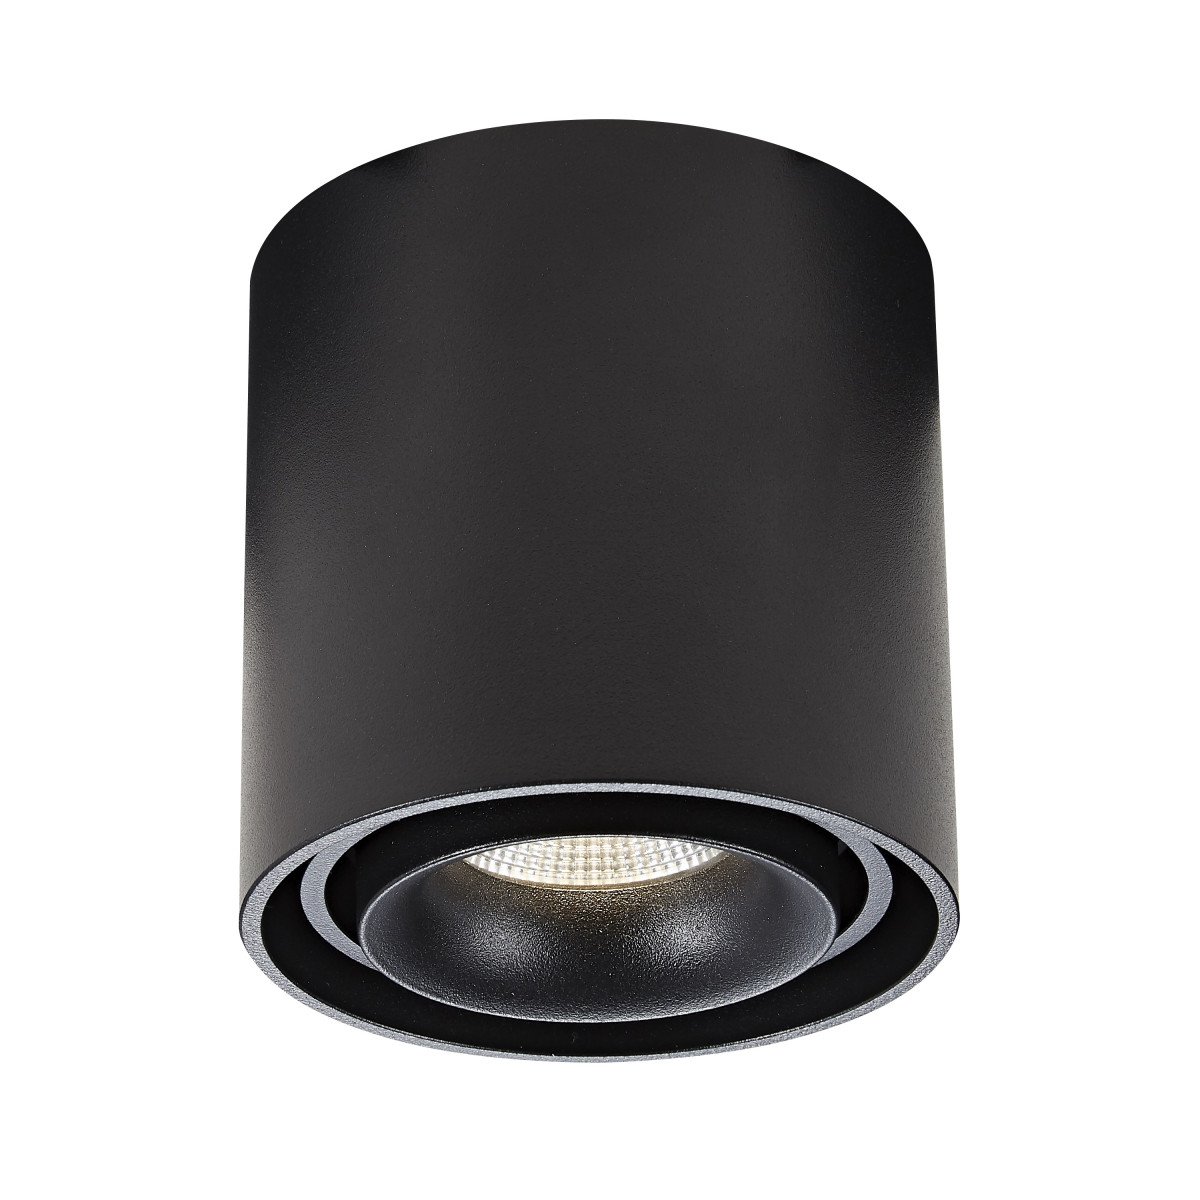 Éclairage d'intérieur Spot en saillie Oliver aux formes rondes, design moderne et finition de couleur noire.